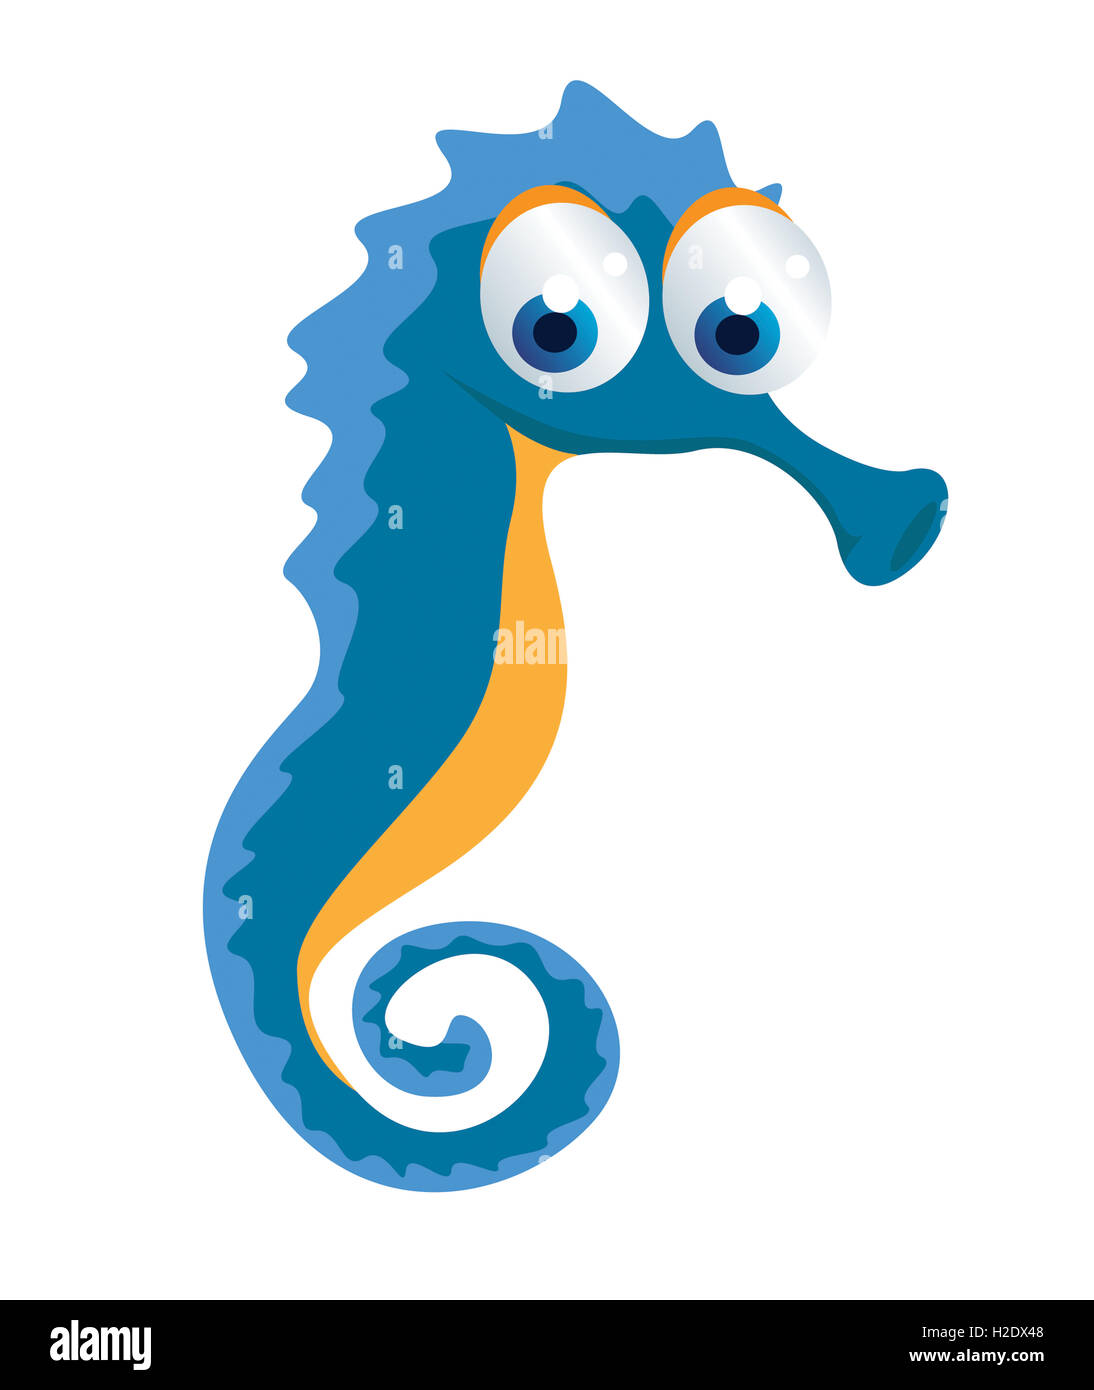 seahorse cartoon Stock Photo